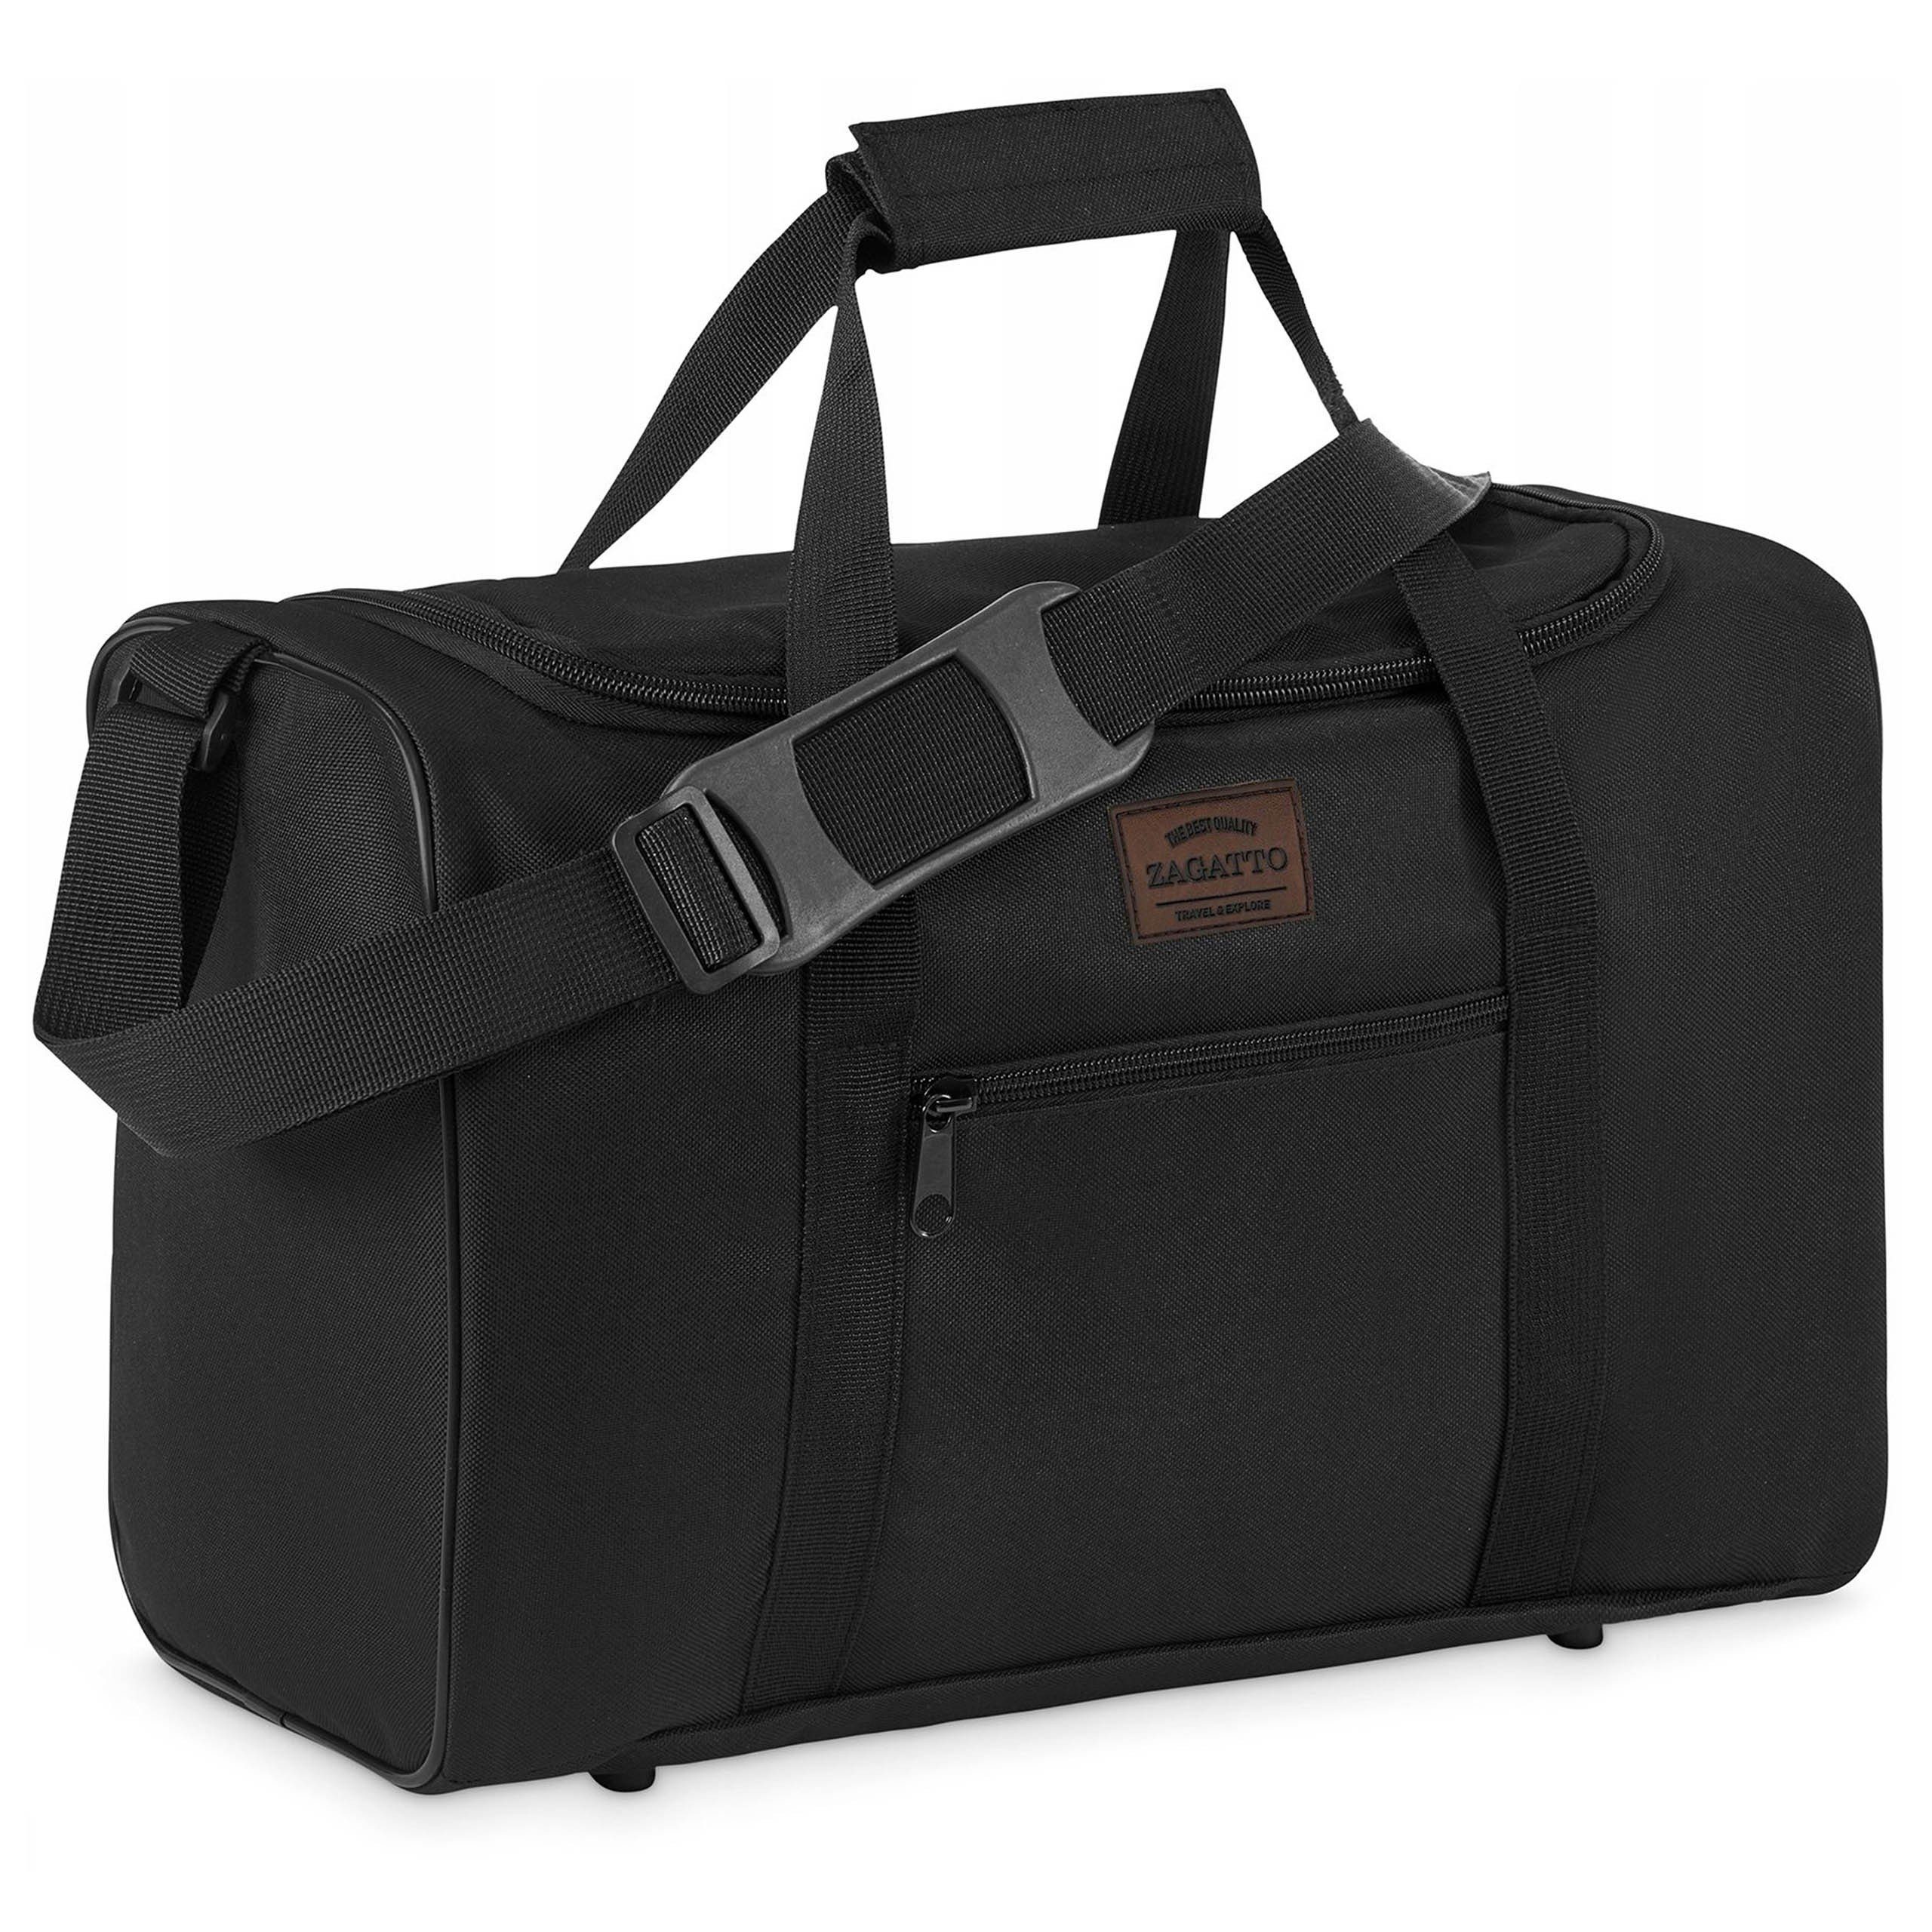 Sarcia.eu Reisetasche Schwarze Reisetasche für Flugzeug mit Schutzfüßen 40x20x25cm Zagatto